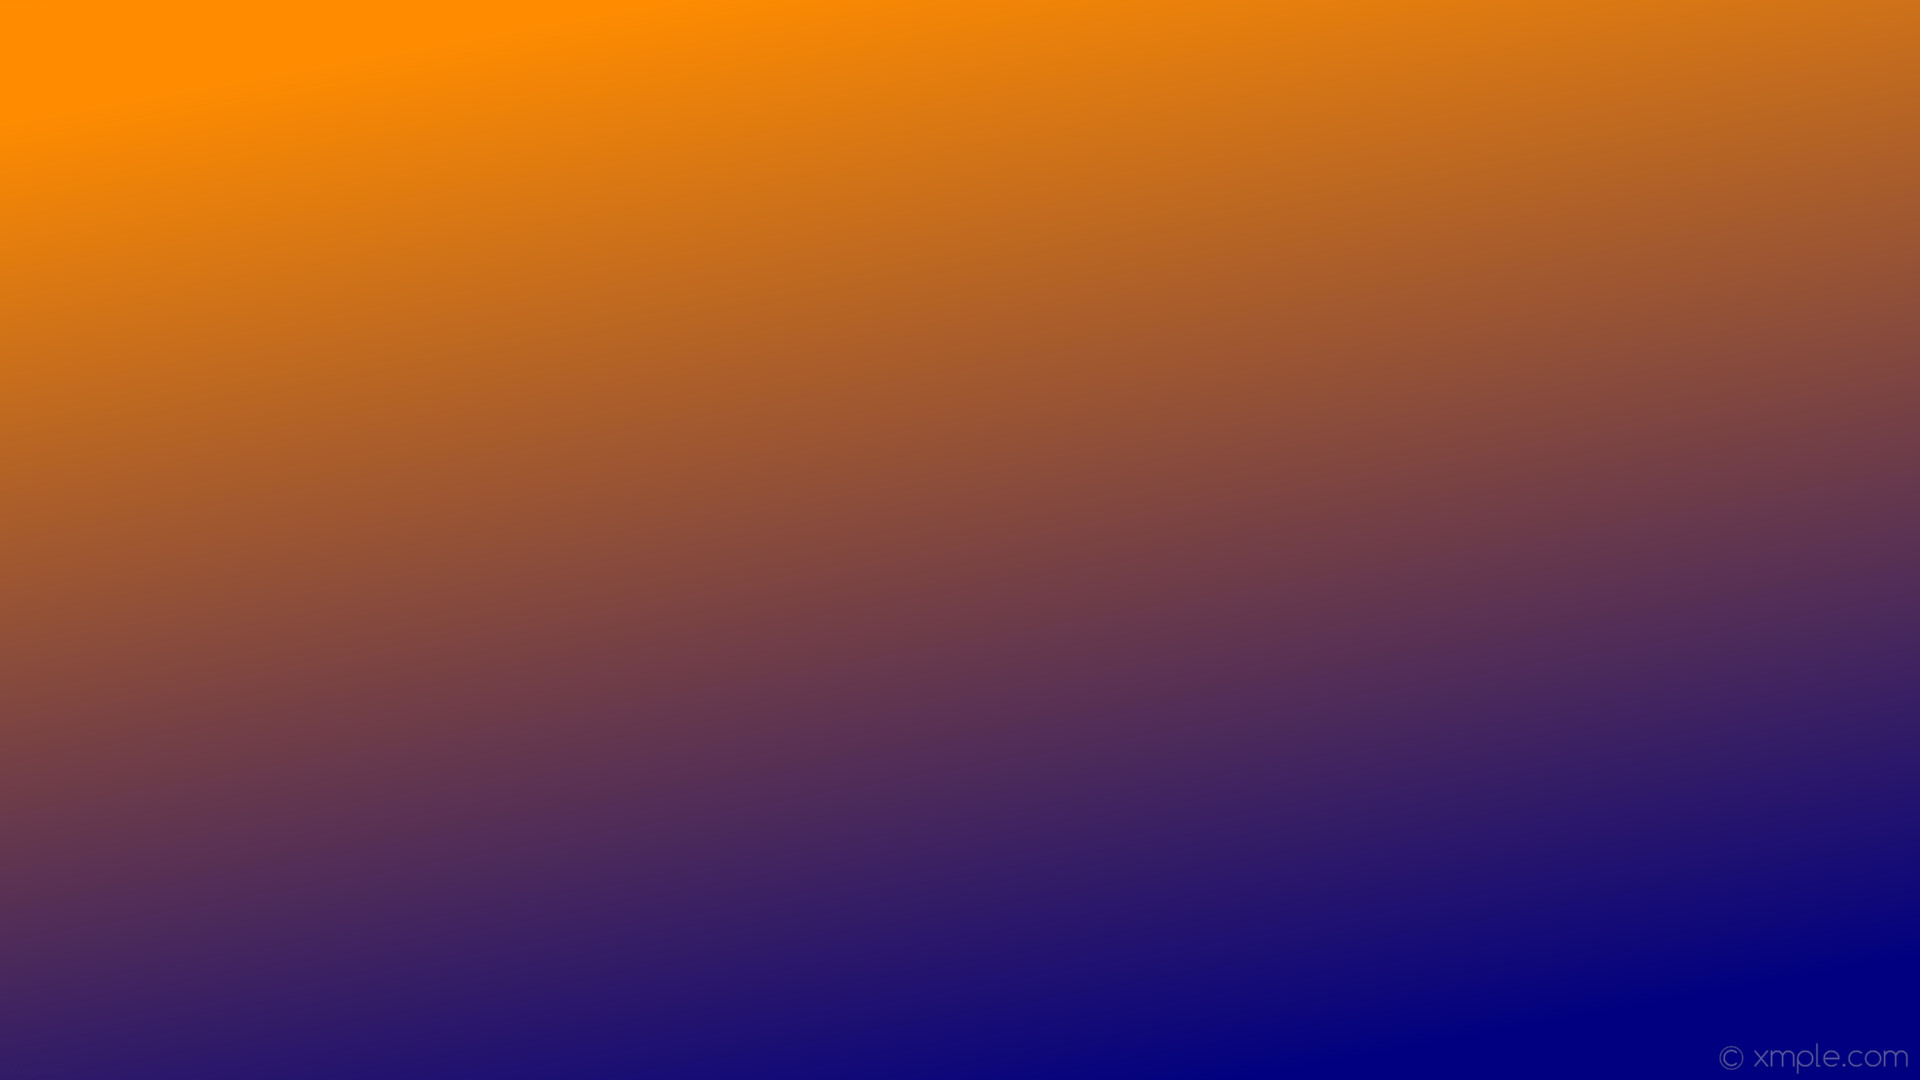 1920x1080 wallpaper gradient blue orange linear navy dark orange #000080 #ff8c00 300Â°